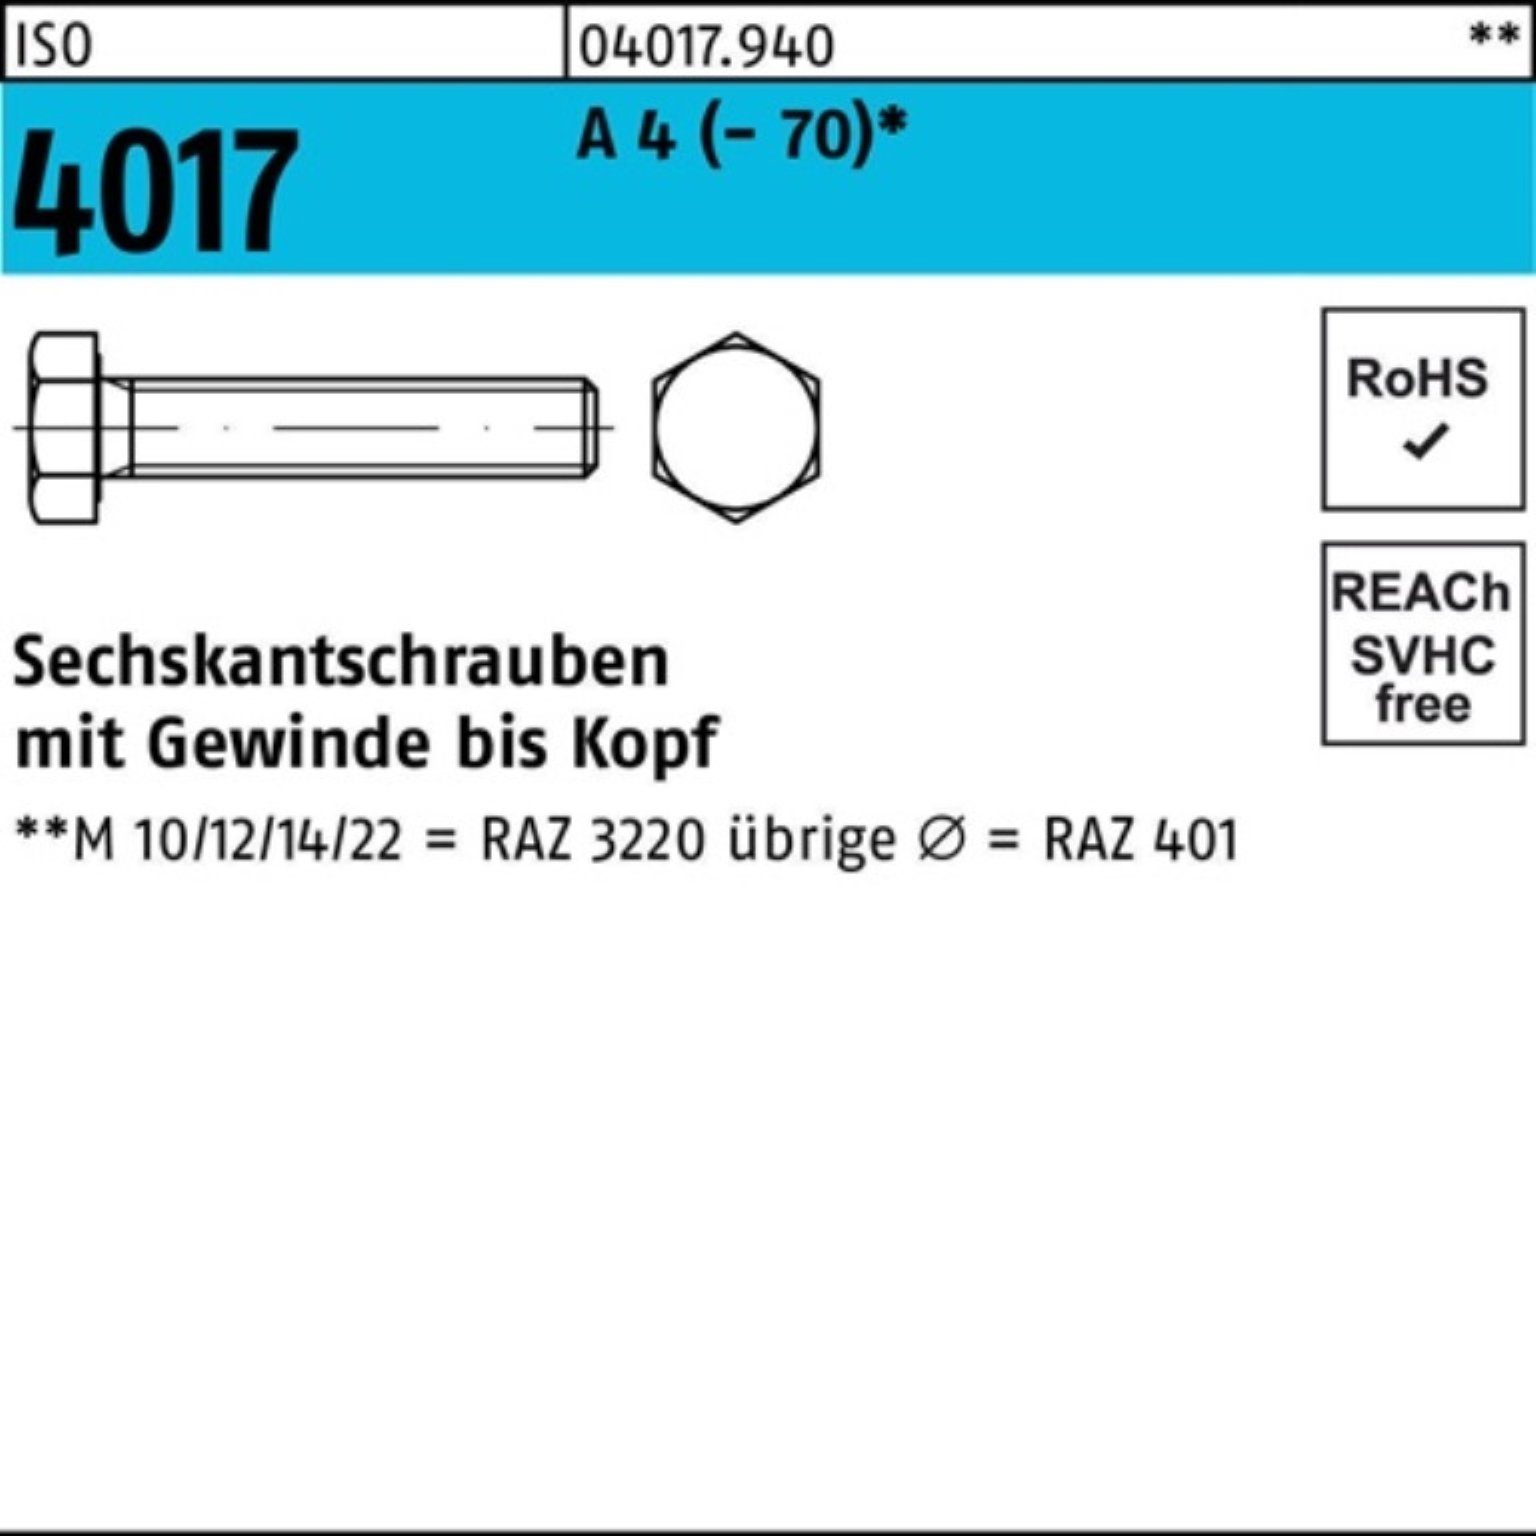 Bufab Sechskantschraube 100er Pack Sechskantschraube ISO 4017 VG M6x 14 A 4 (70) 100 Stück